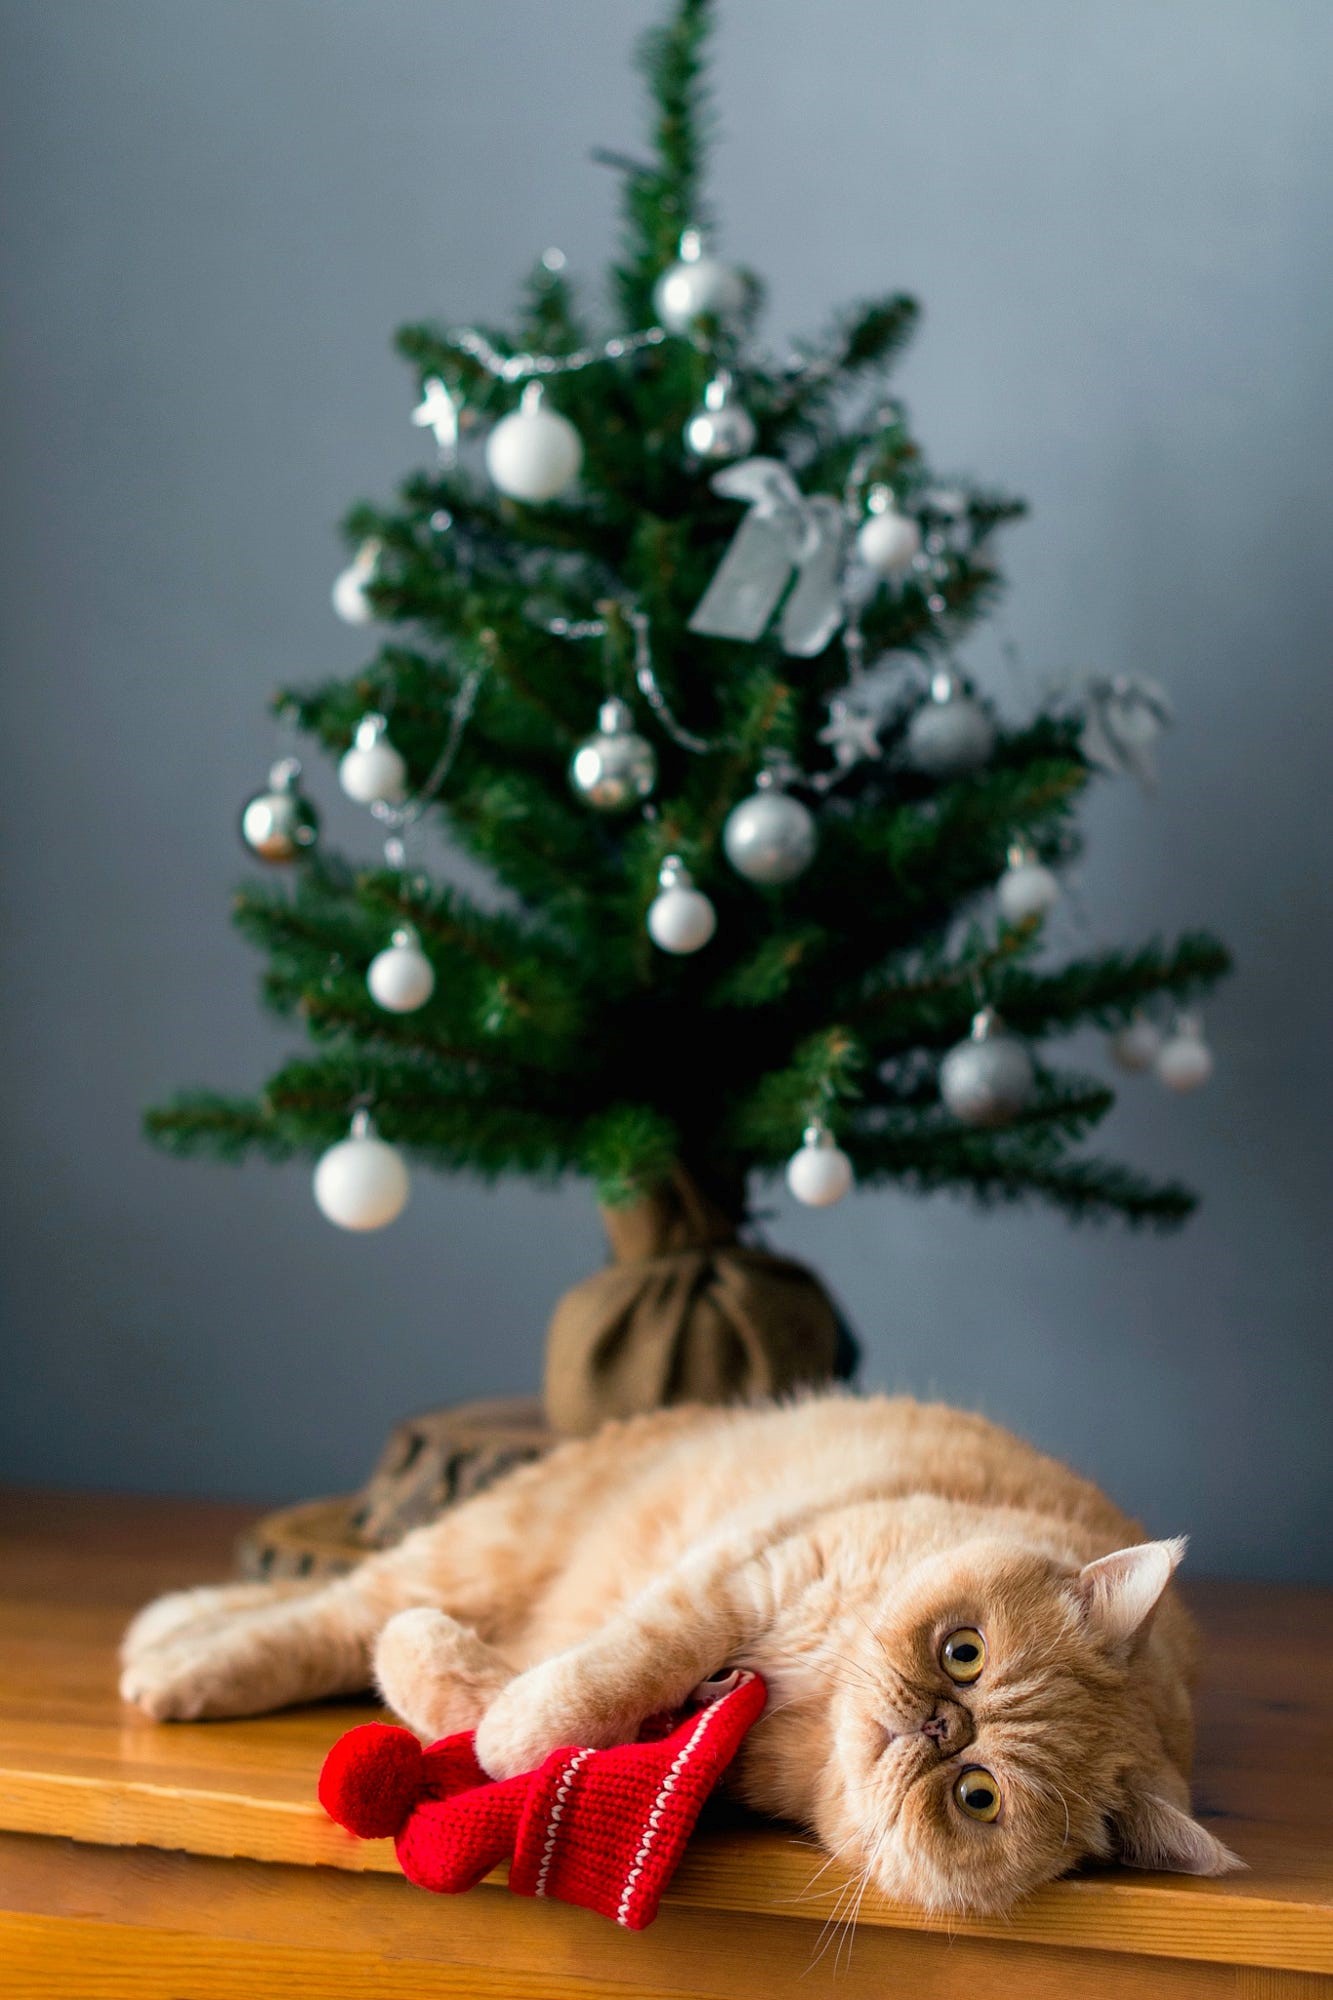 Фото Рыжий кот лежит на полу у елки, фотограф Vladislav Nosick